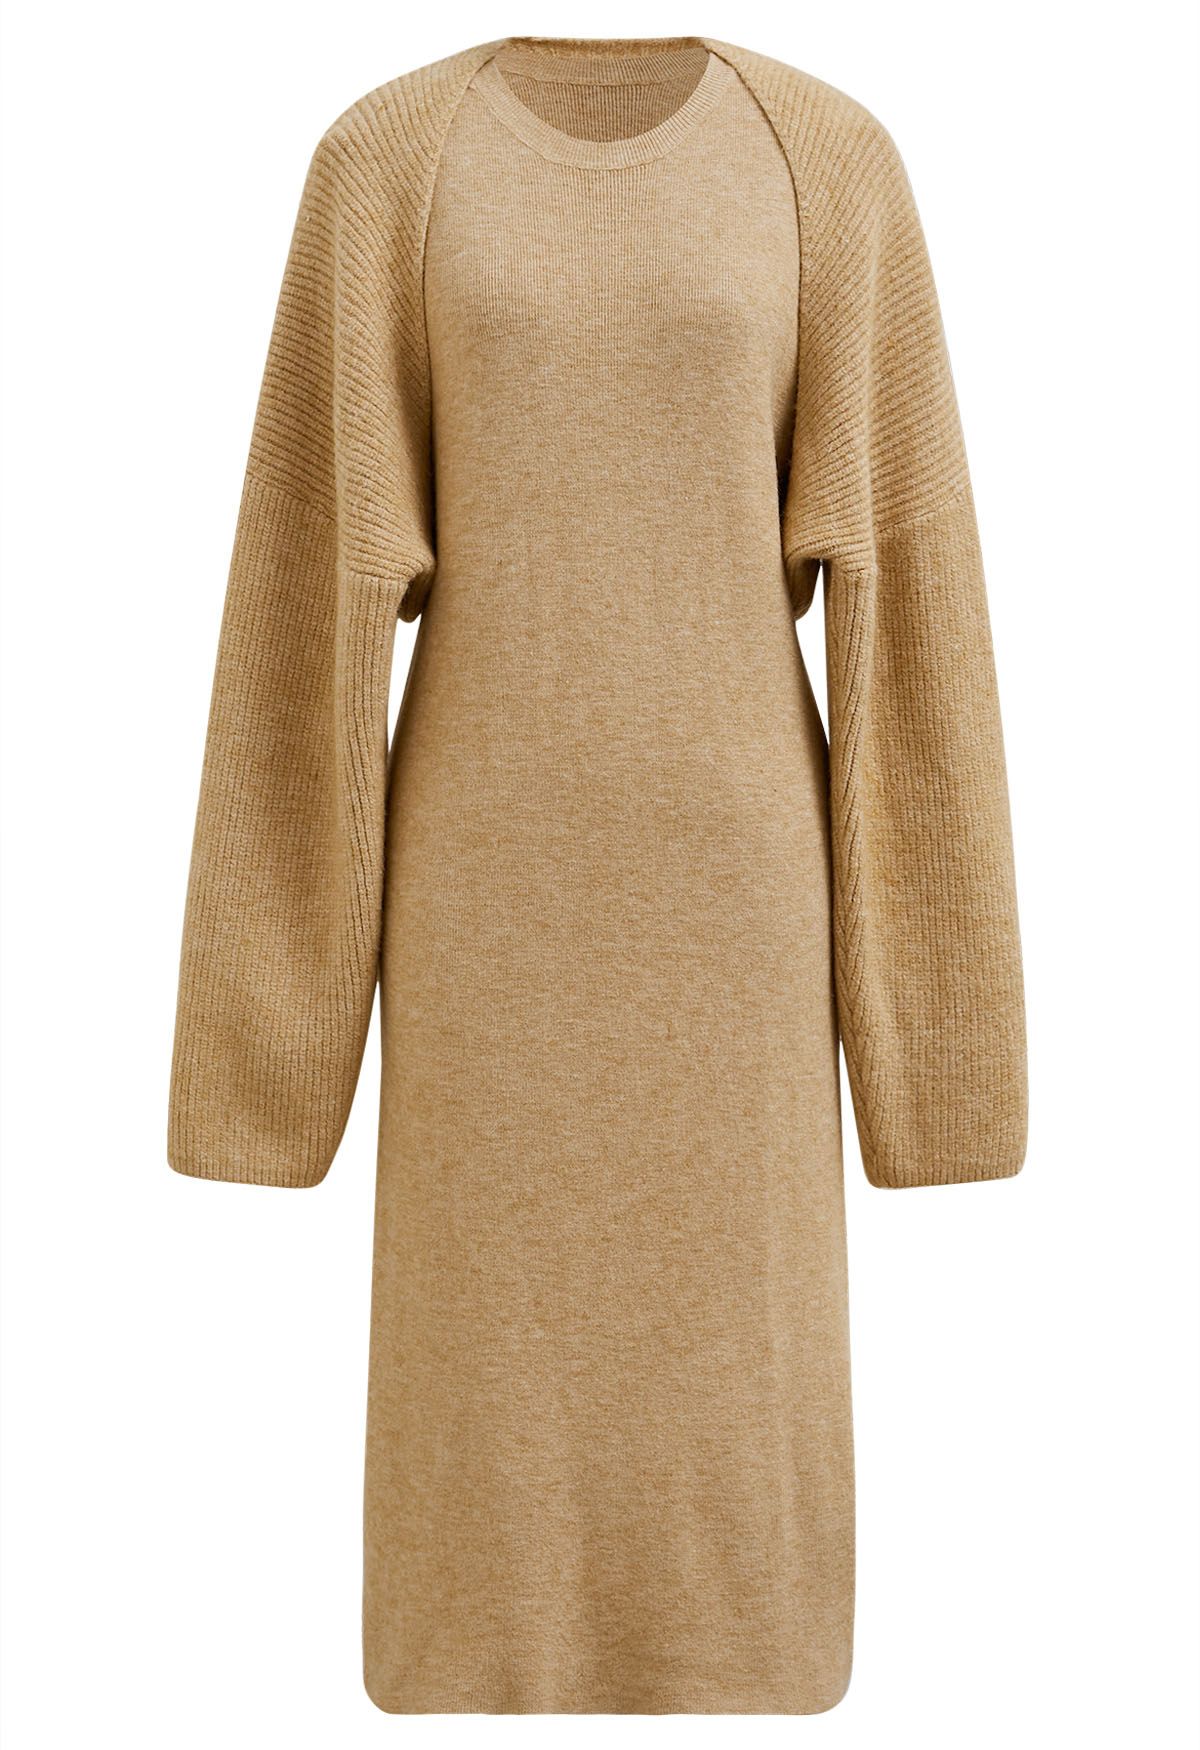 Conjunto informal de vestido de punto sin mangas y manga de suéter en mezcla de lana en color camel